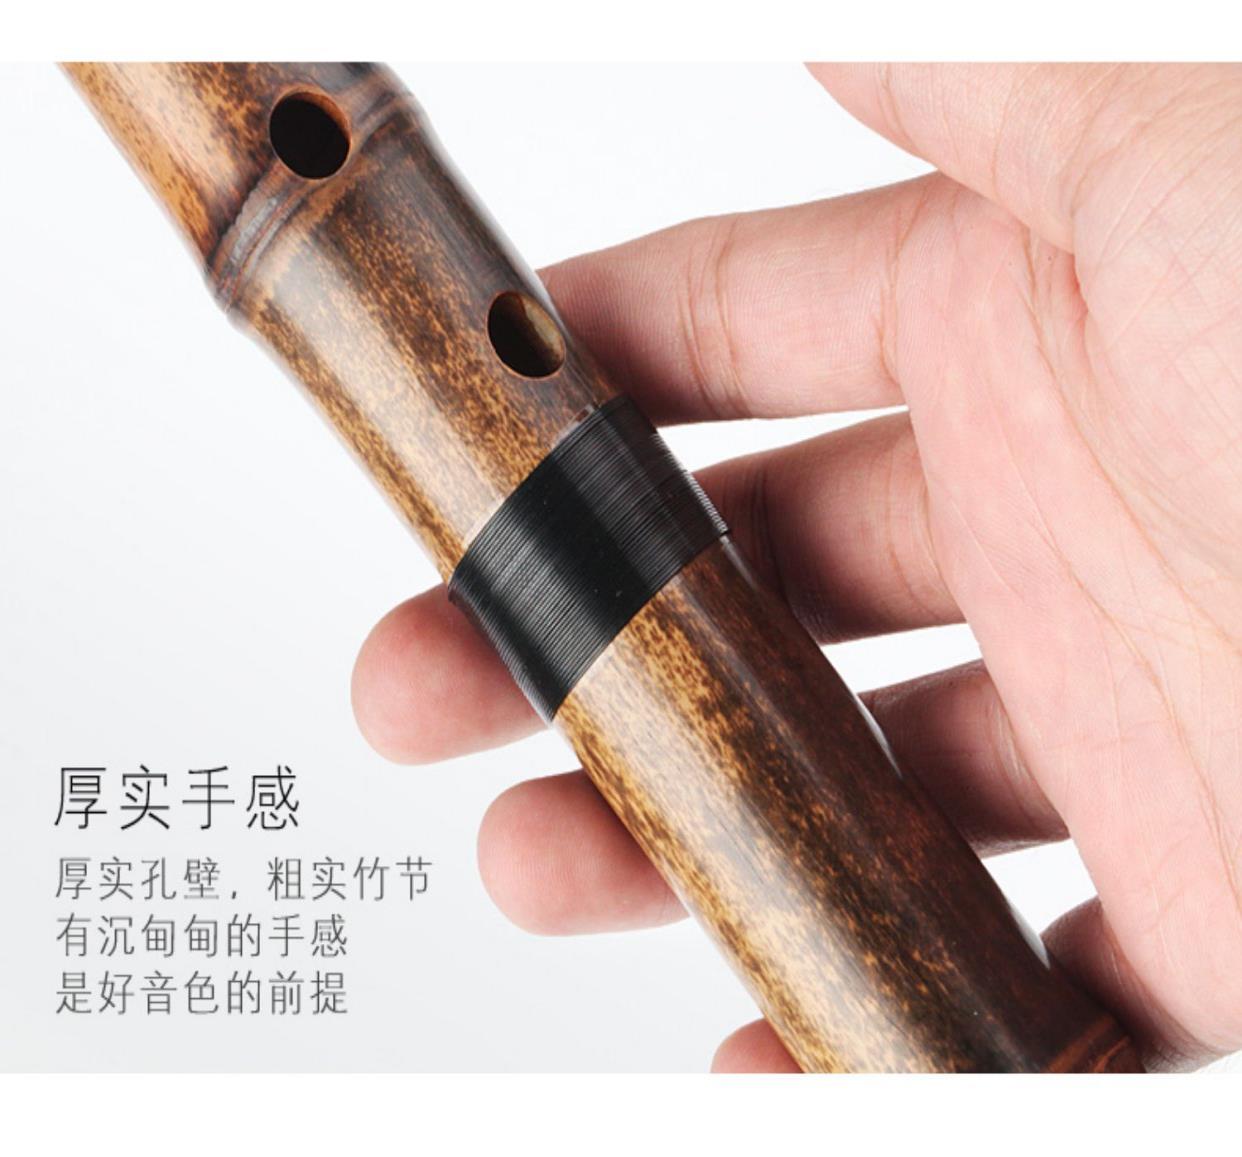 Lingyin cao cấp trình diễn chuyên nghiệp cấp độ Dongxiao, một mảnh tre cao cấp màu tím chín mảnh nhạc cụ Xiao thuận tay và trái tay 6G tám lỗ F - Nhạc cụ dân tộc